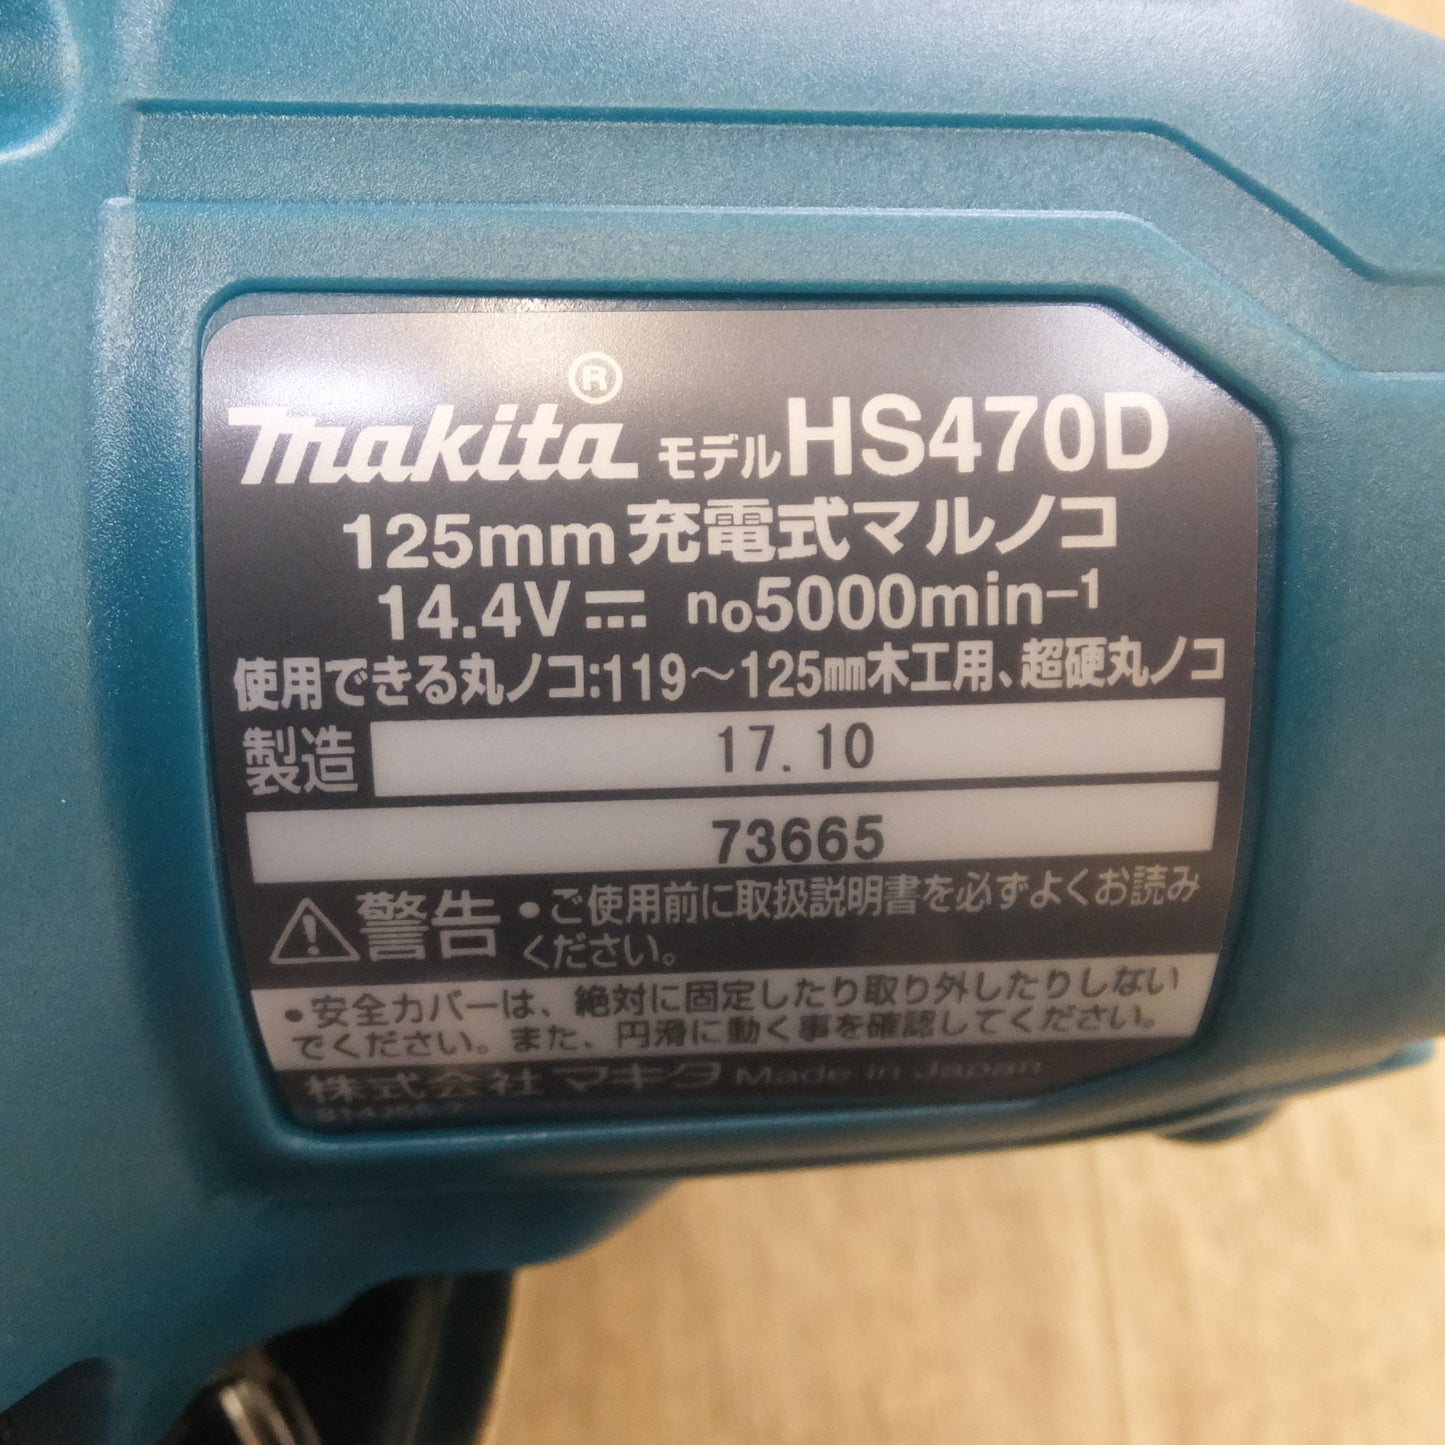 [送料無料]未使用★マキタ makita 125mm 充電式マルノコ HS470DRG 14.4V★